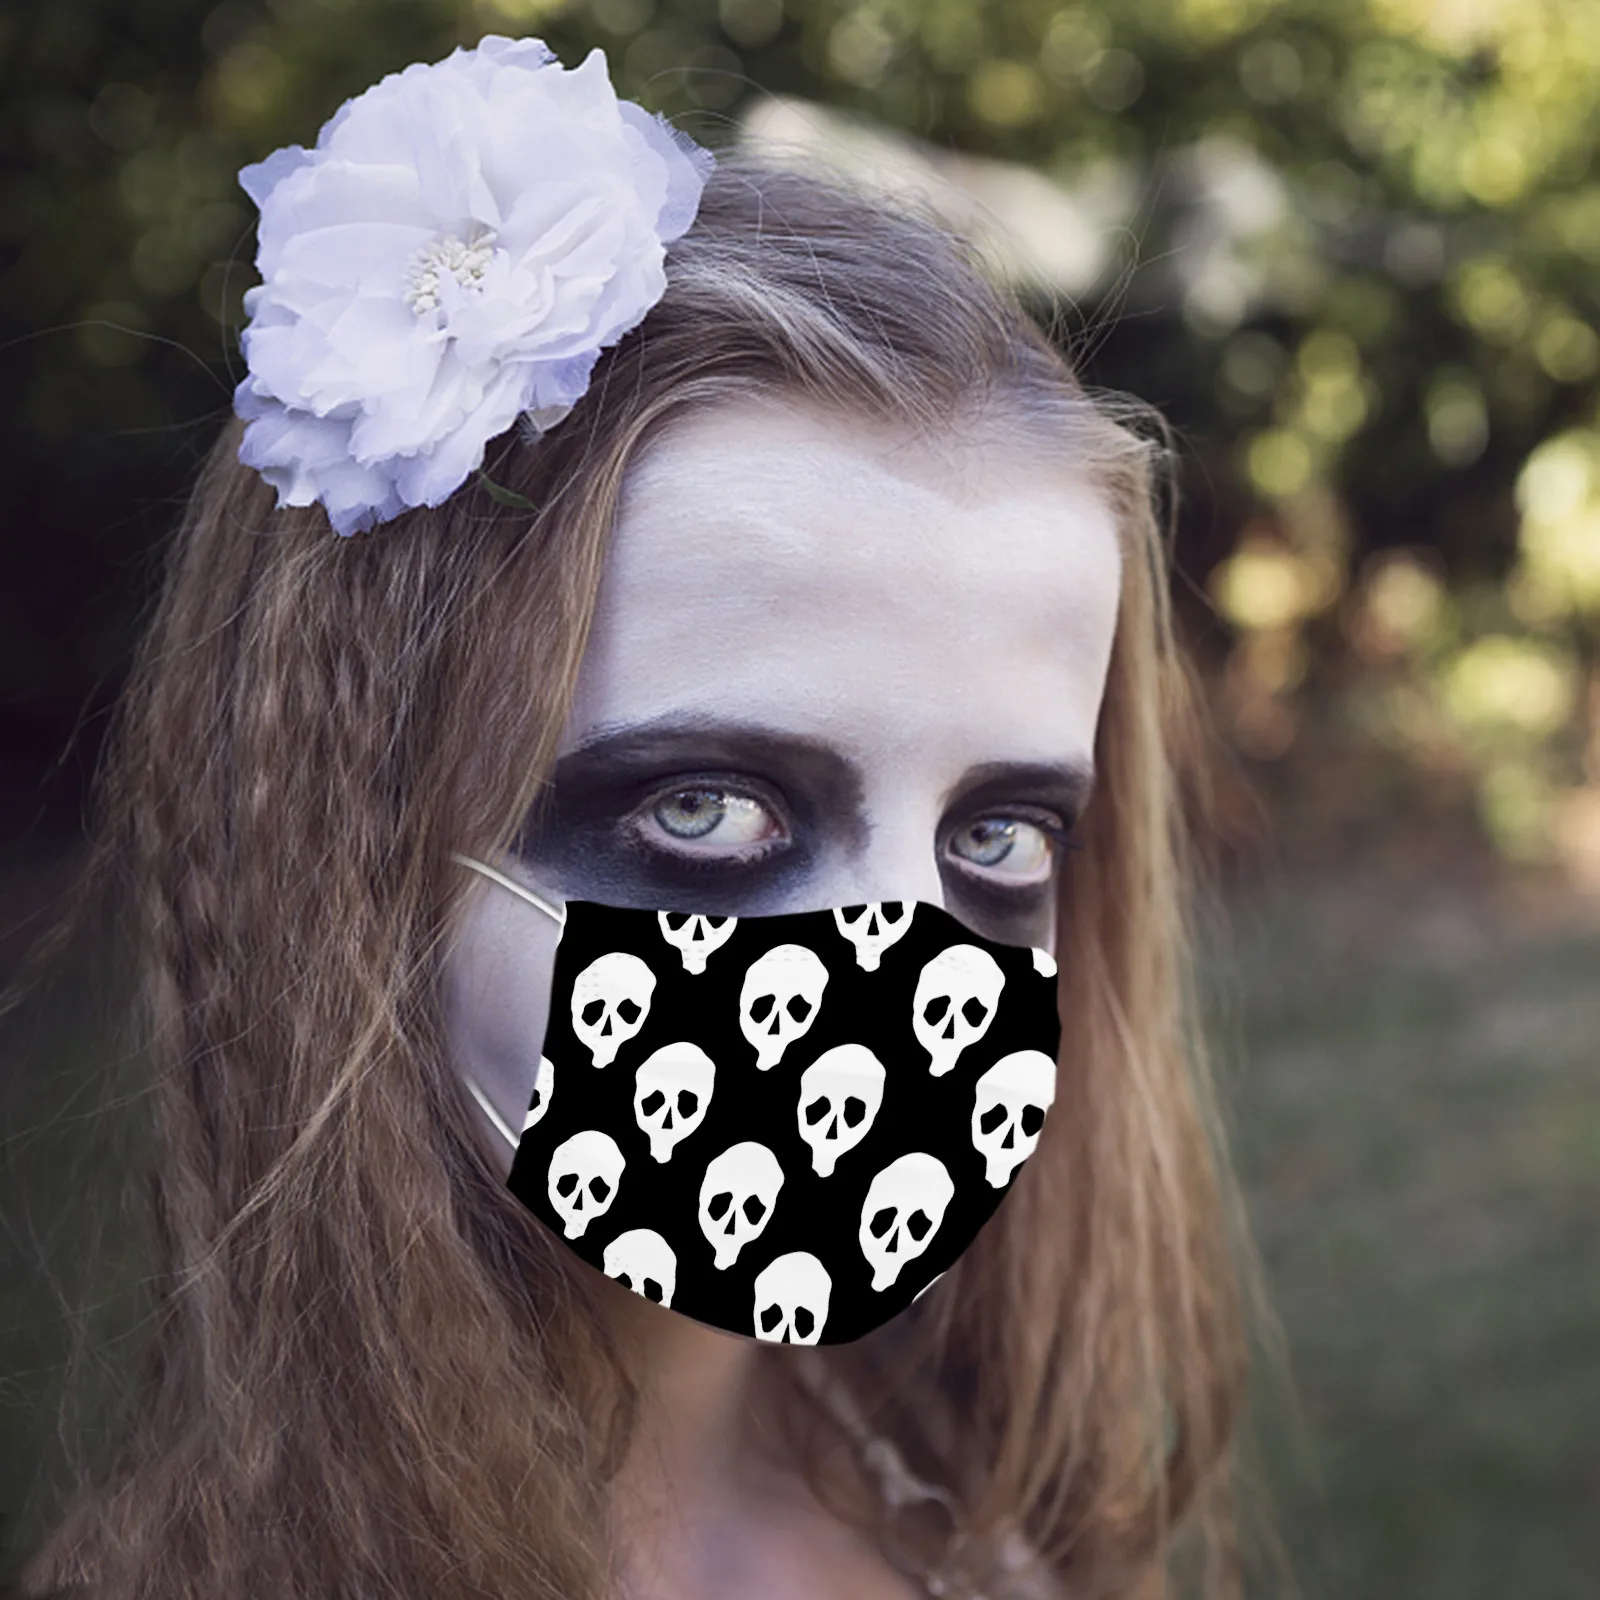 

Маска для лица на Хэллоуин для детей, 10 шт., маска с принтом призрака, тыквы, 3-слойная Пылезащитная маска для рта, украшение для лица